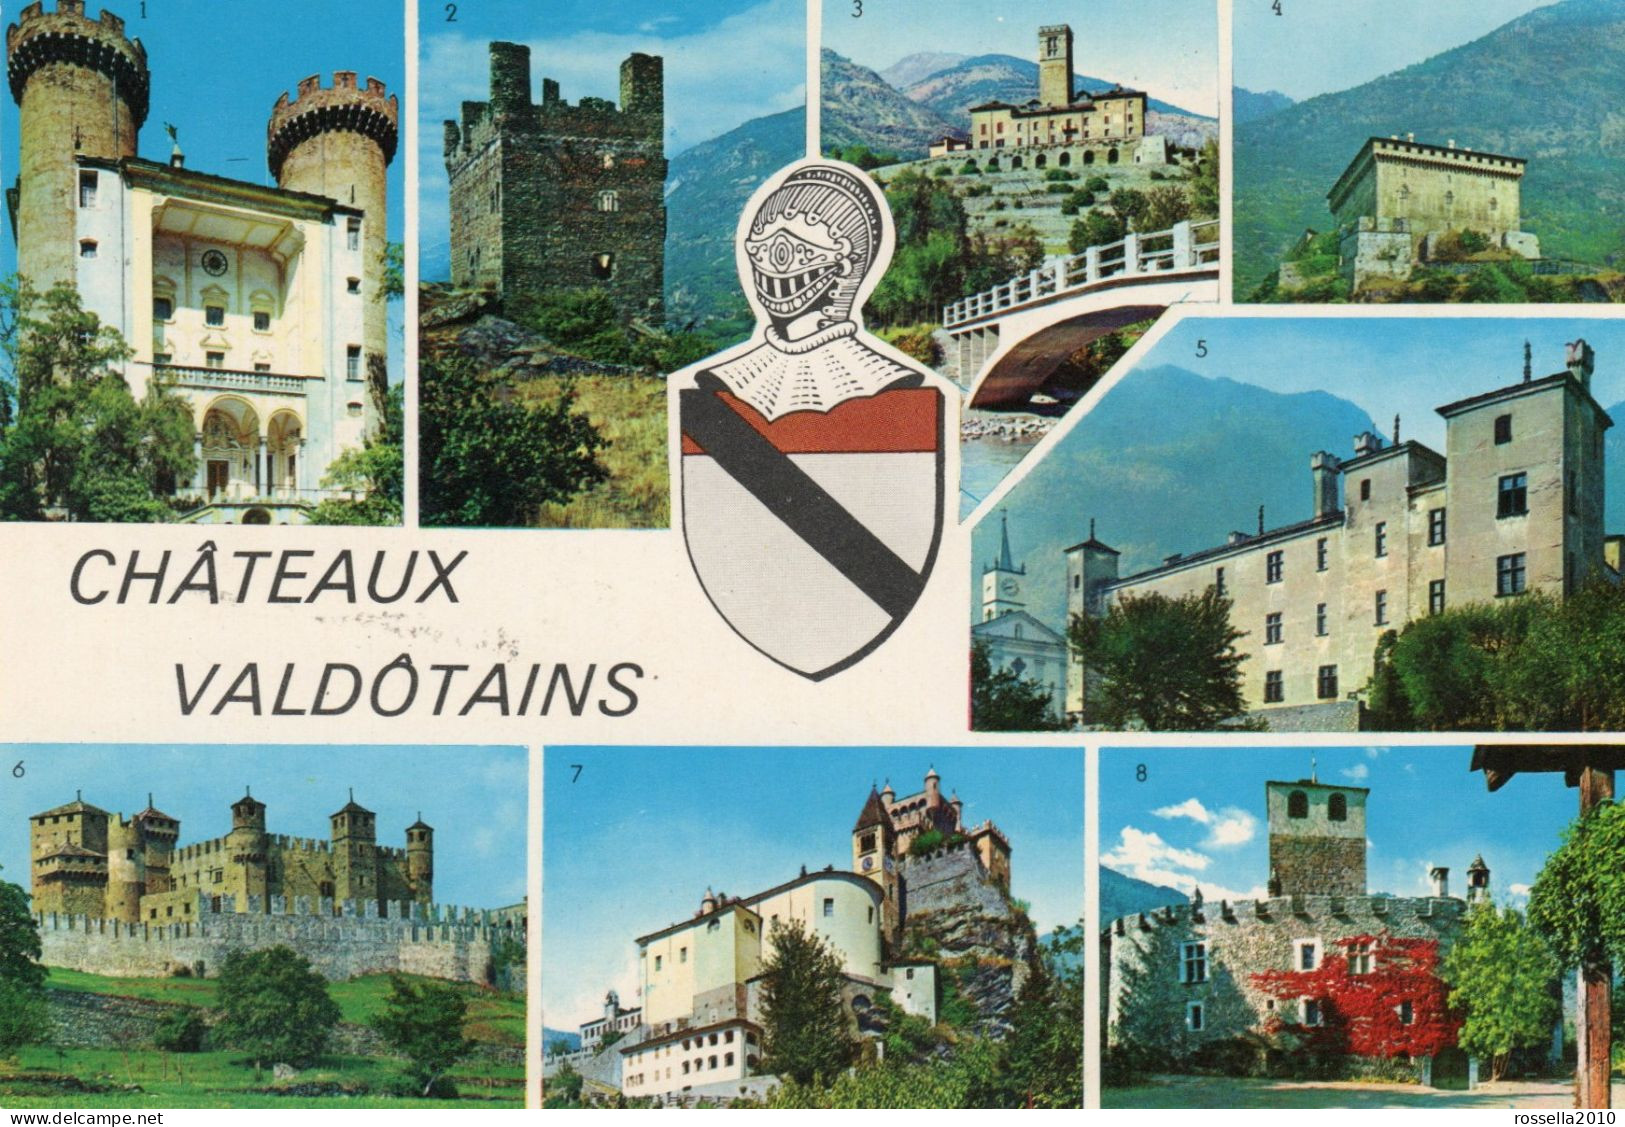 CARTOLINA 1975 ITALIA VALLE D' AOSTA CASTELLI CHATEAU VALDOTAINS SALUTI VEDUTINE Italy Postcard ITALIEN Ansichtskarten - Saluti Da.../ Gruss Aus...